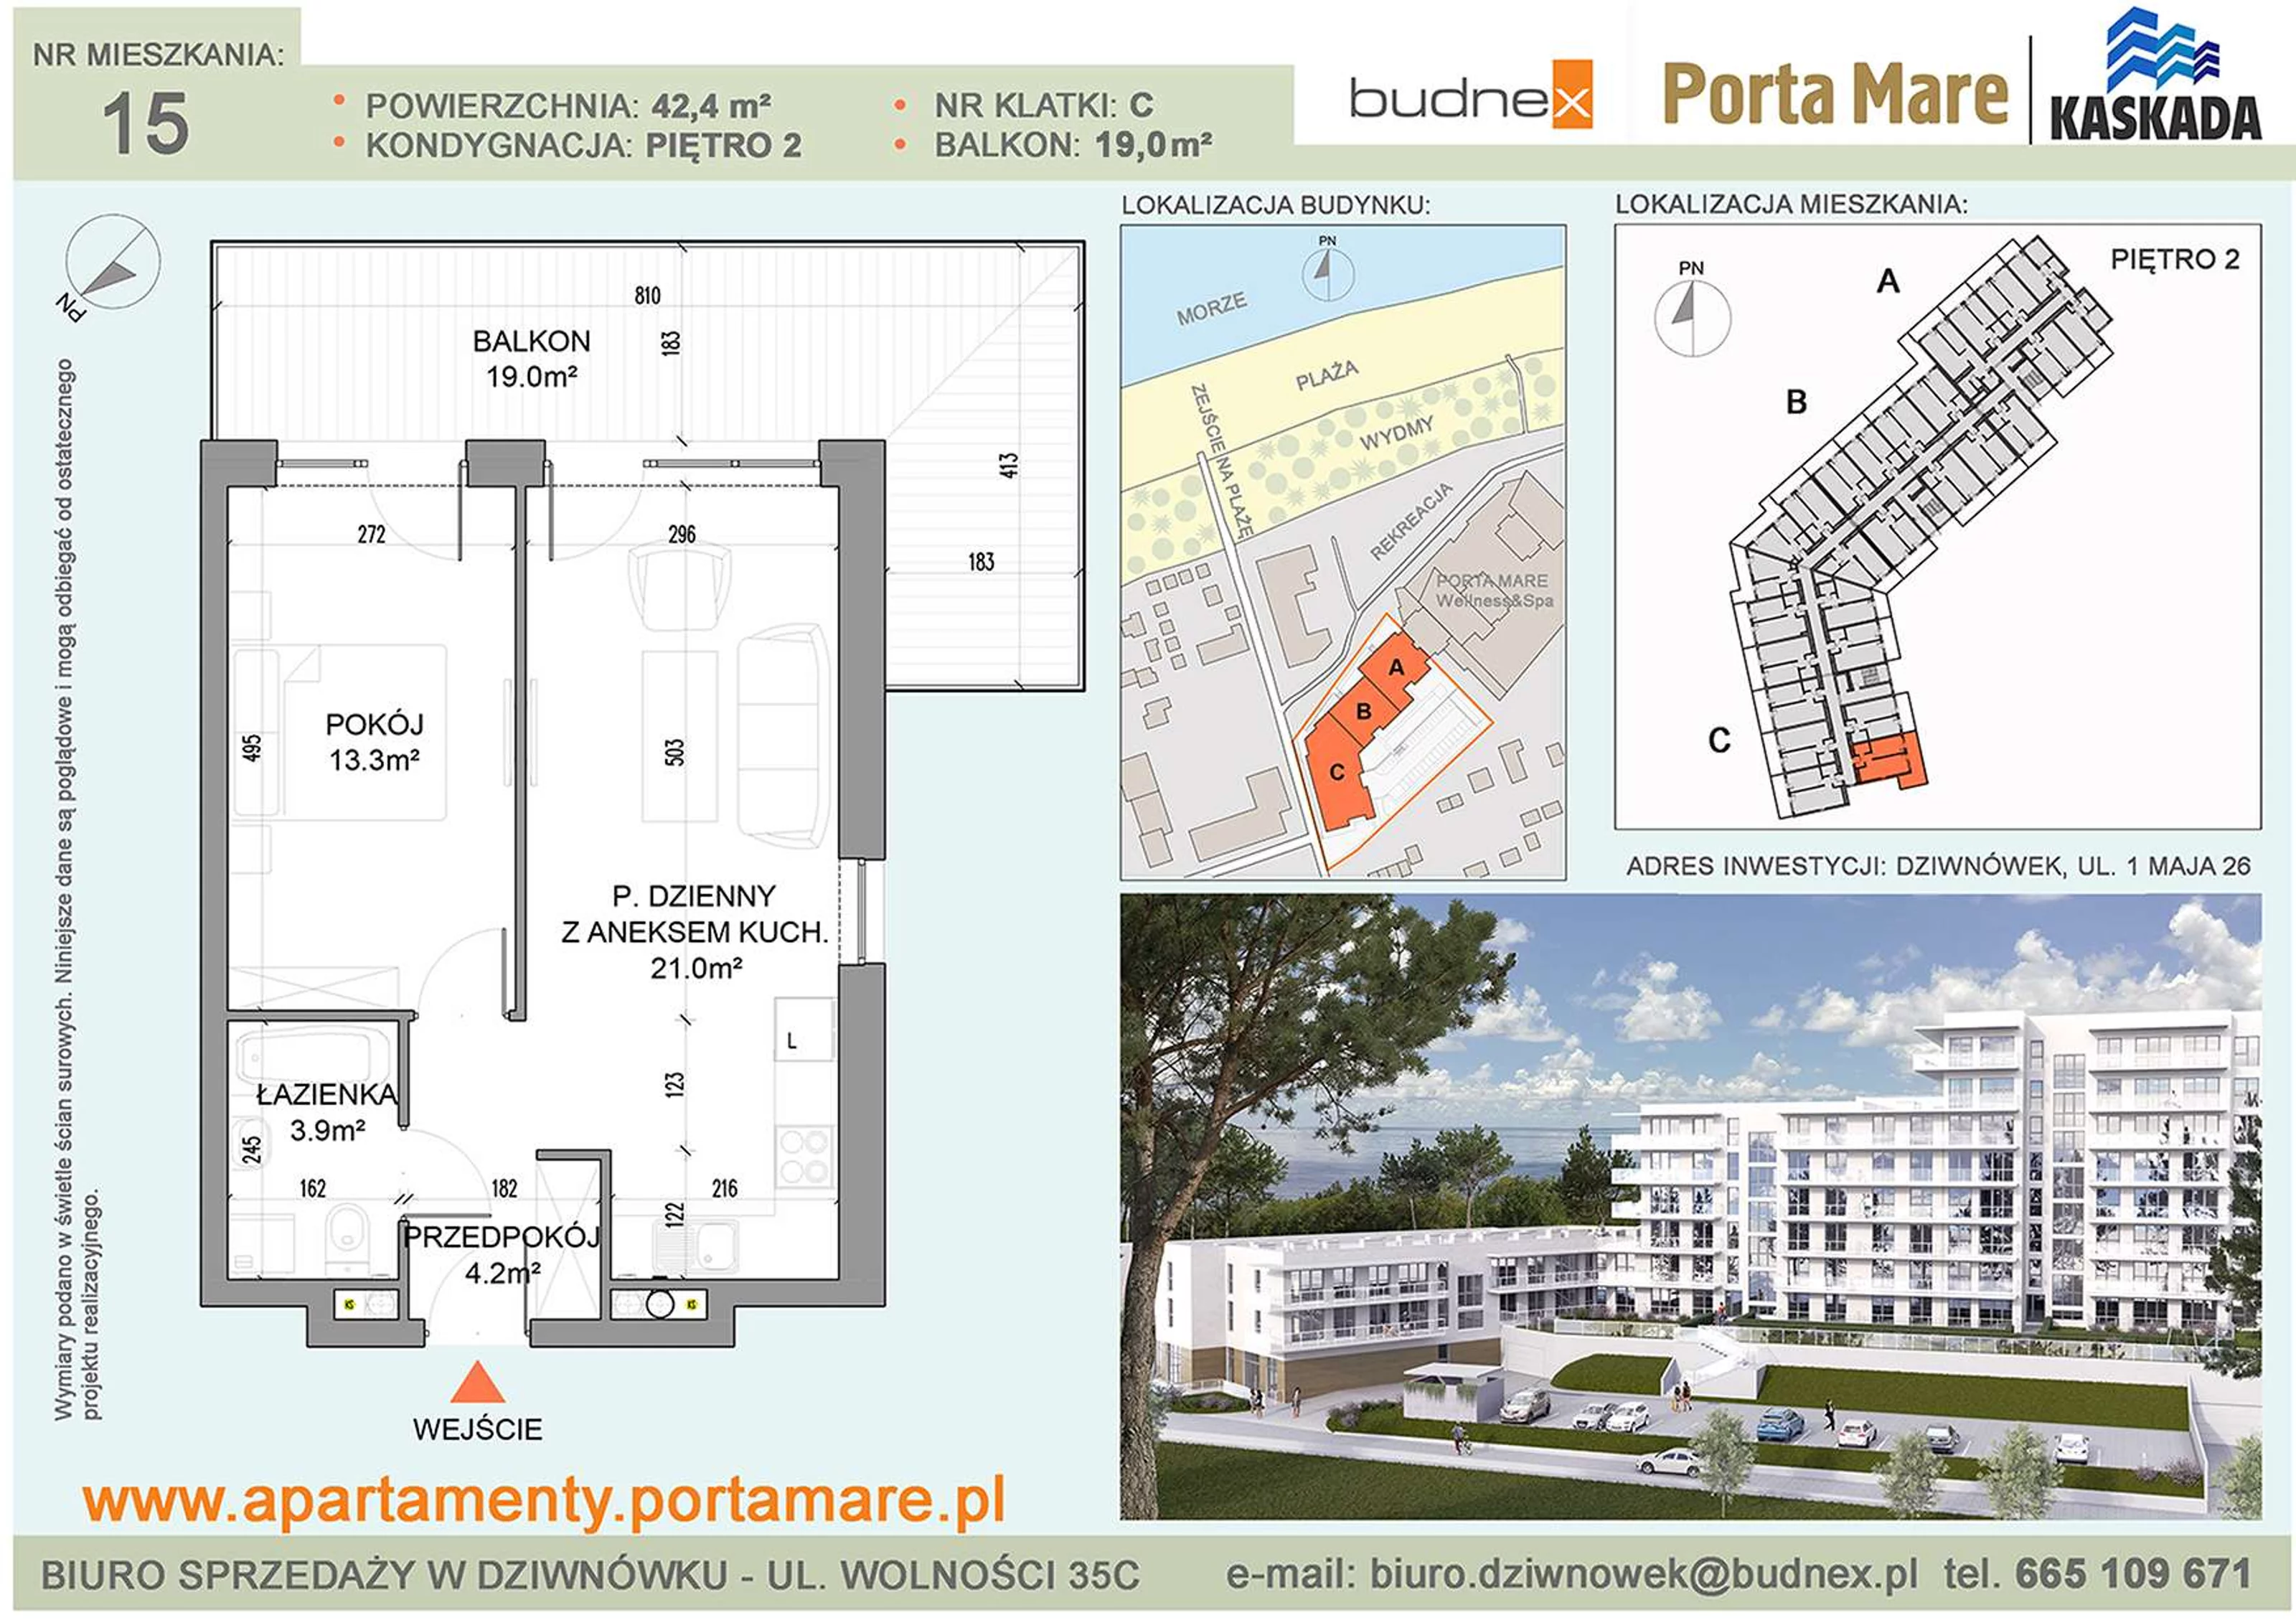 Mieszkanie 42,40 m², piętro 2, oferta nr C/M15, Porta Mare Kaskada, Dziwnówek, ul. 1 Maja 26